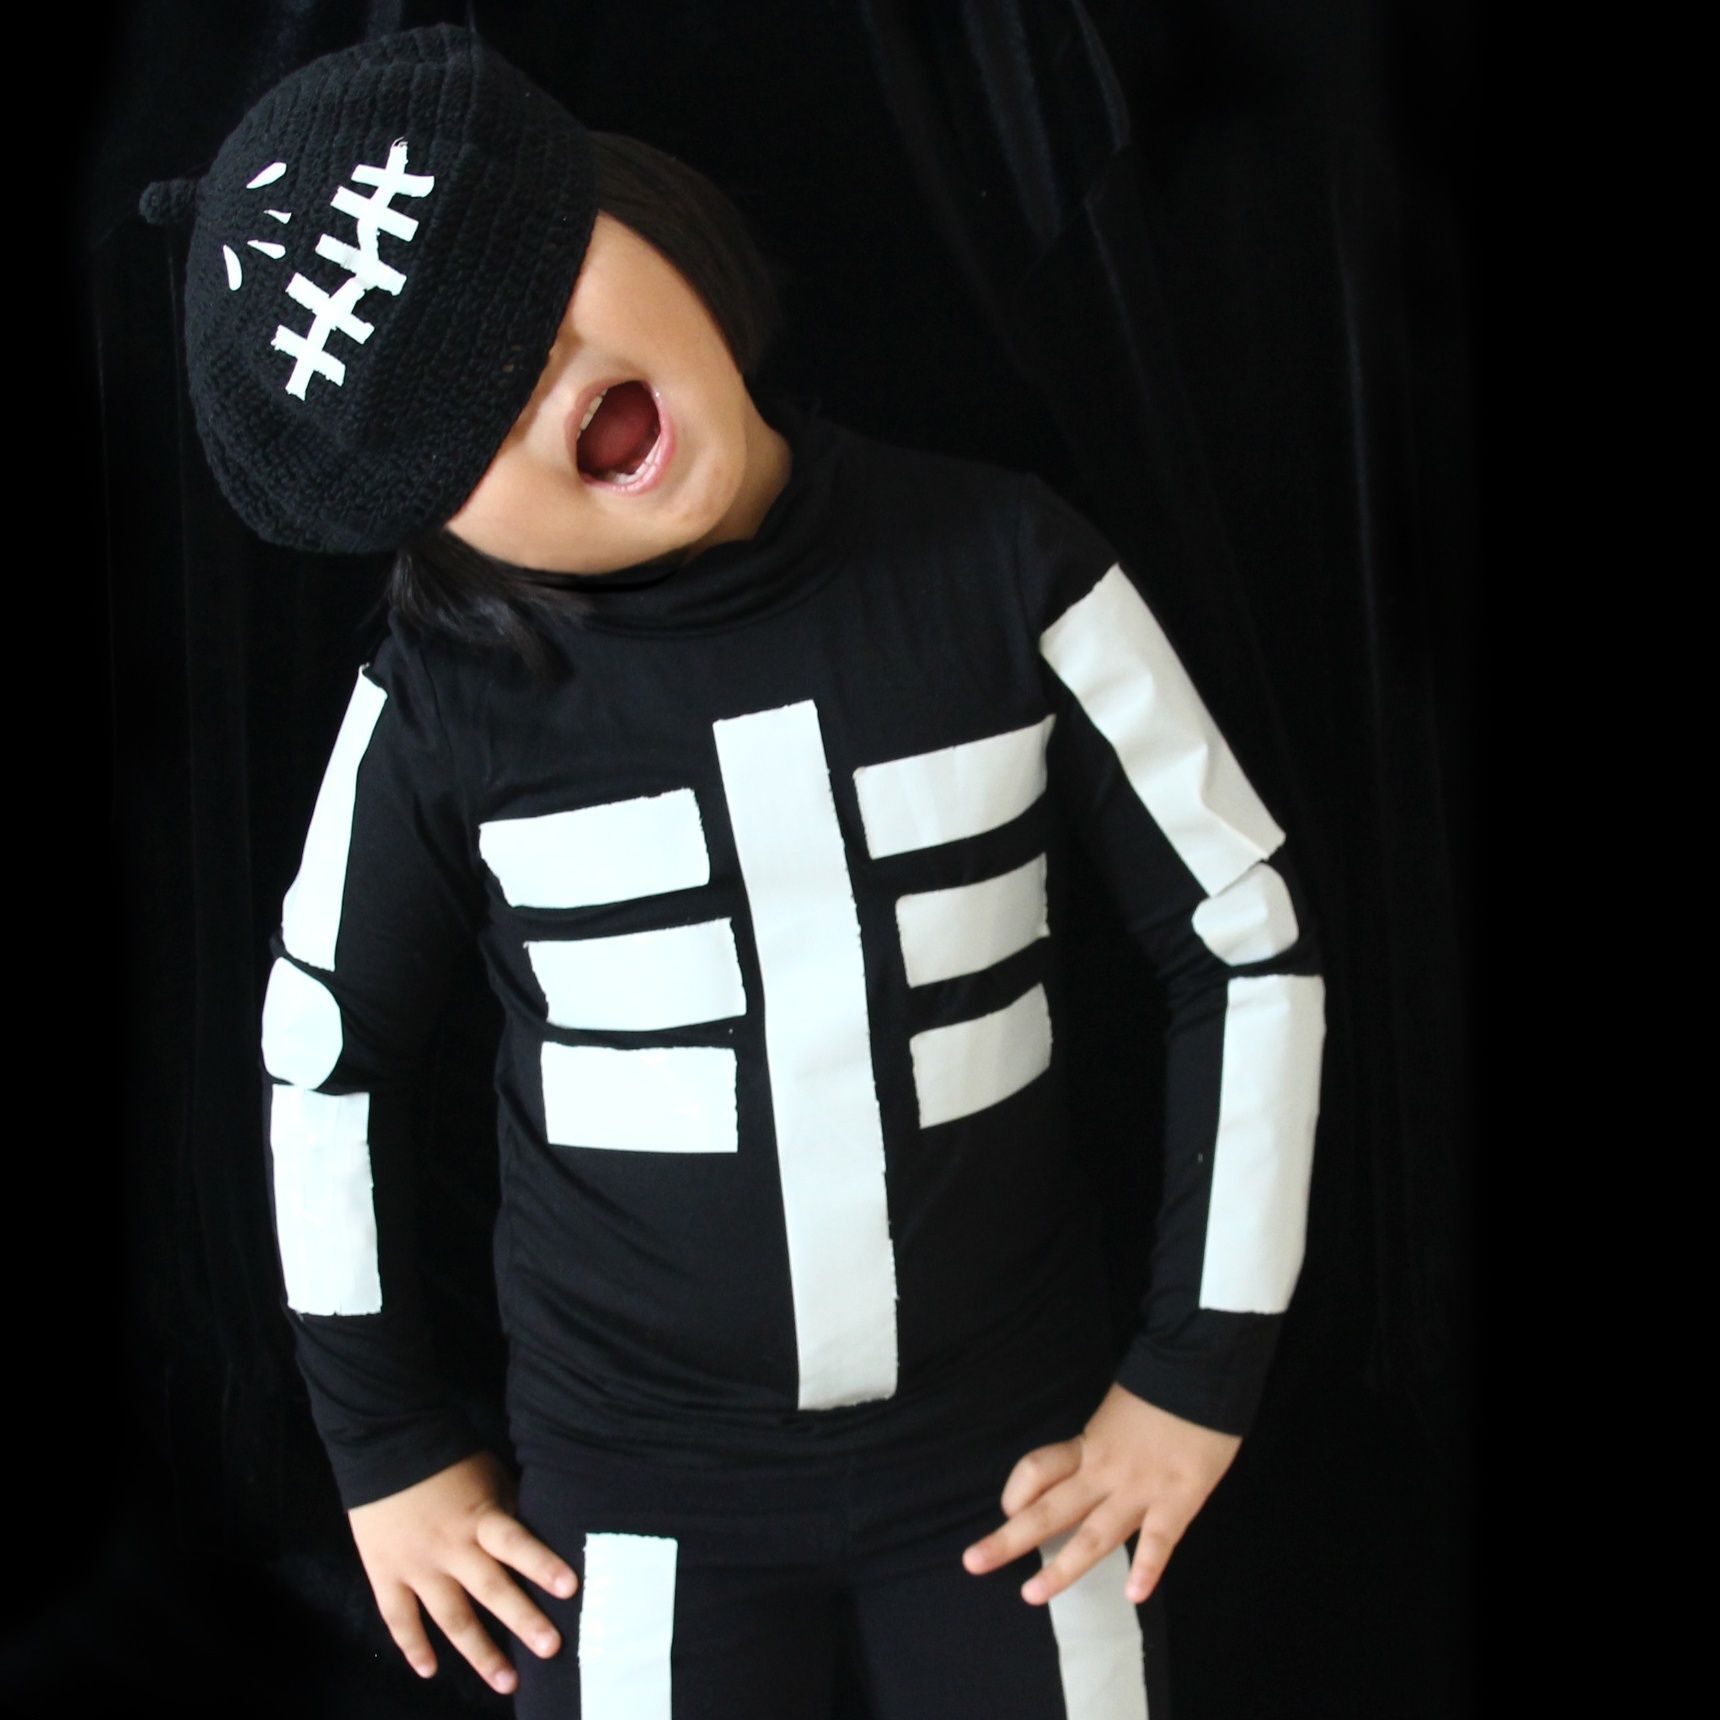 【ハロウィン仮装】子供も簡単100円で可愛いガイコツ衣装！作り方